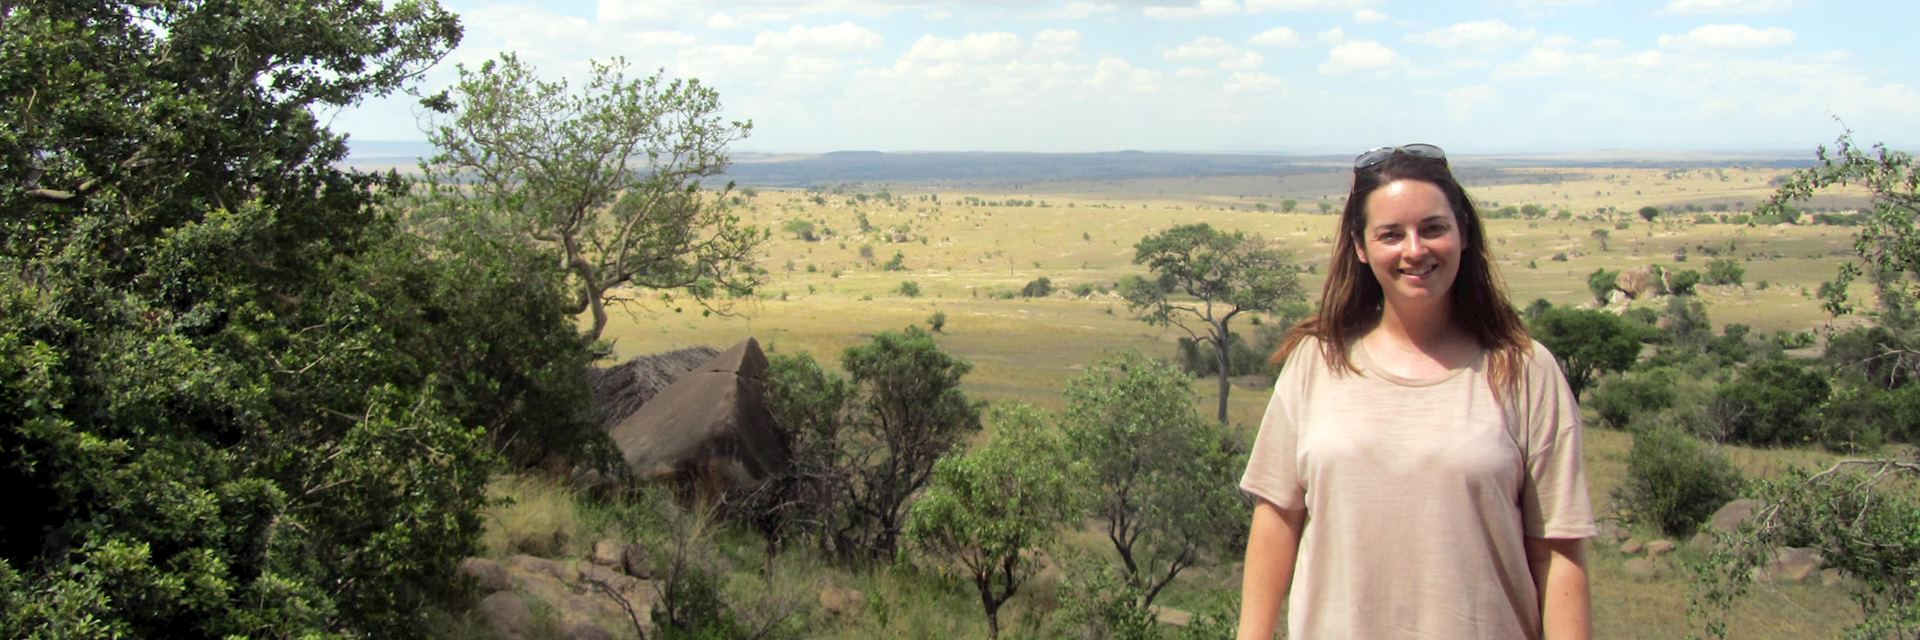 Erin on safari in the Serengeti, Tanzania